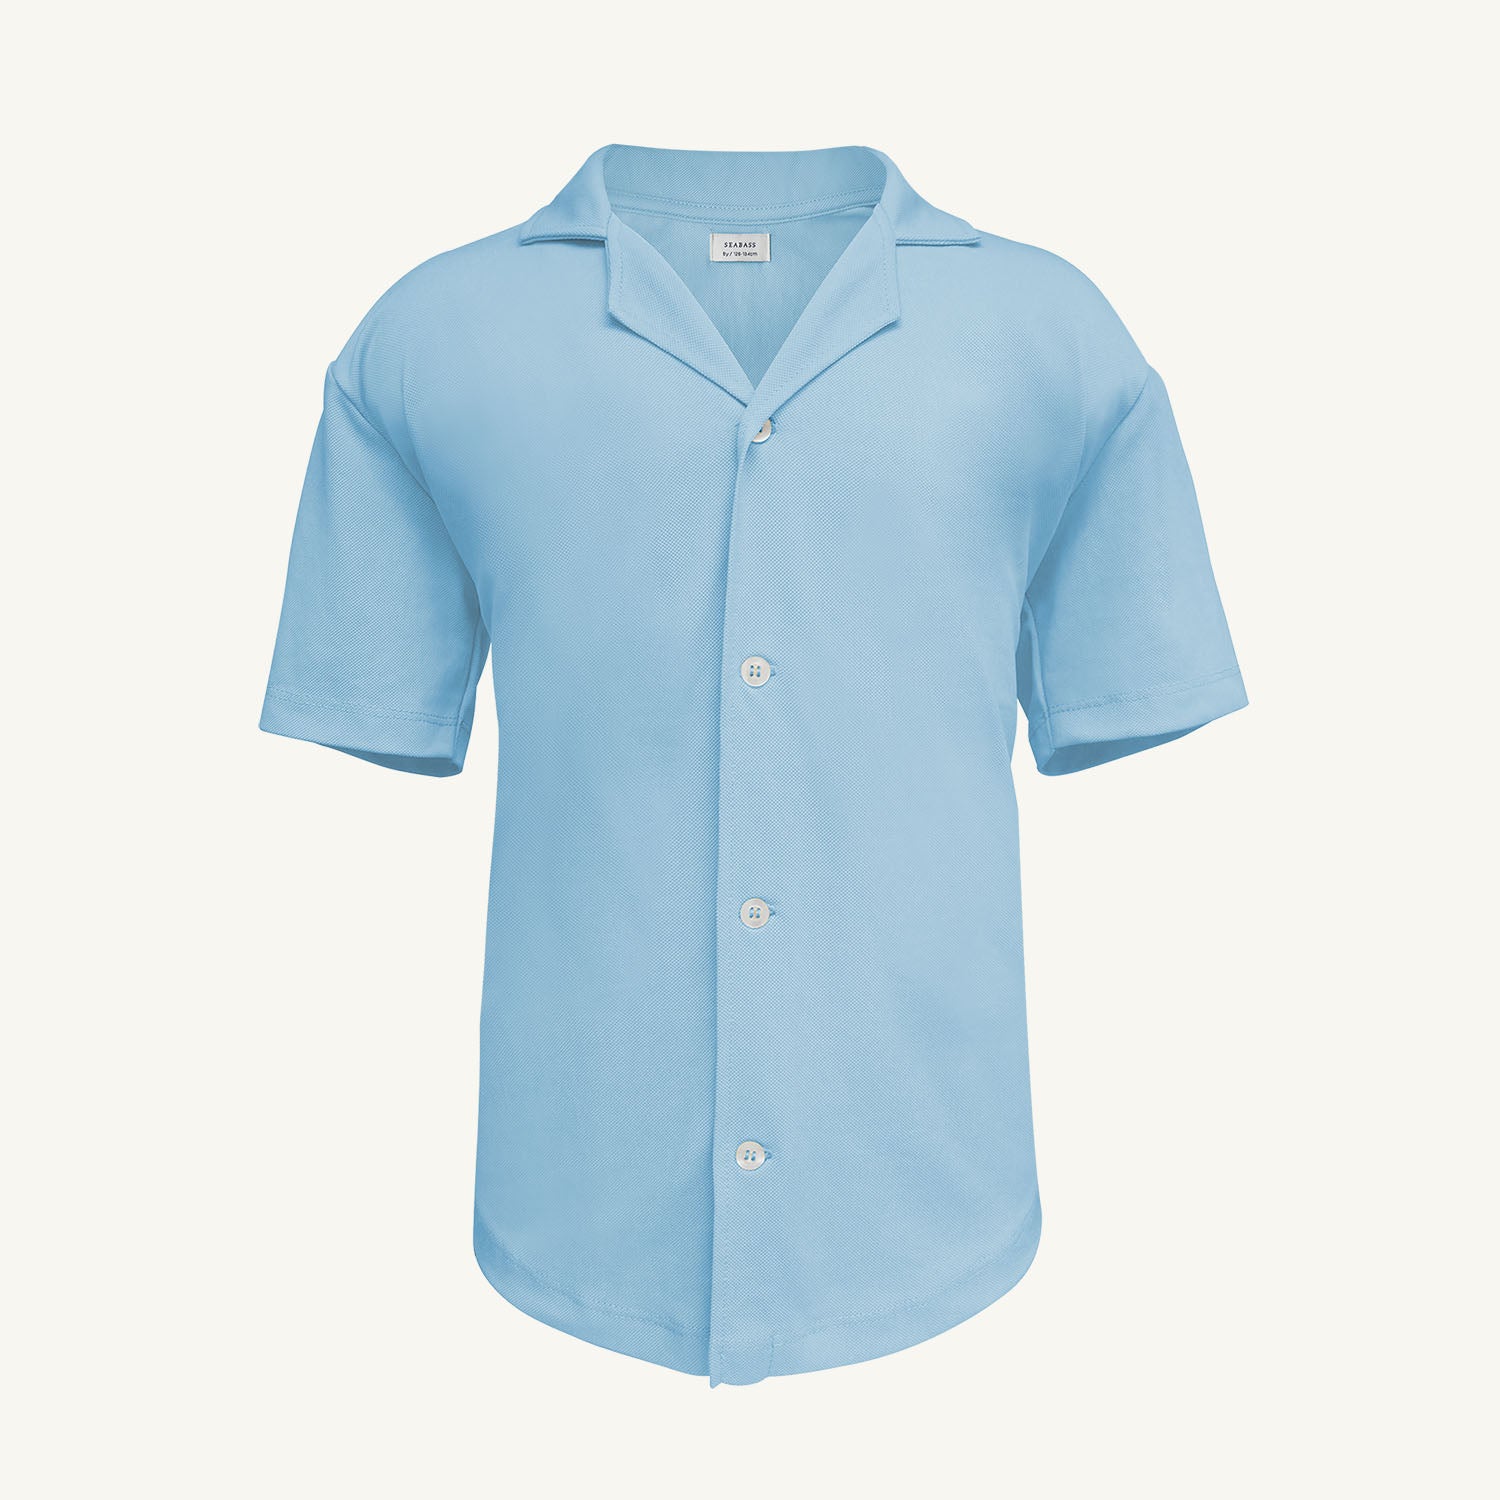 Camisa corta de hombre con protección solar - azul claro